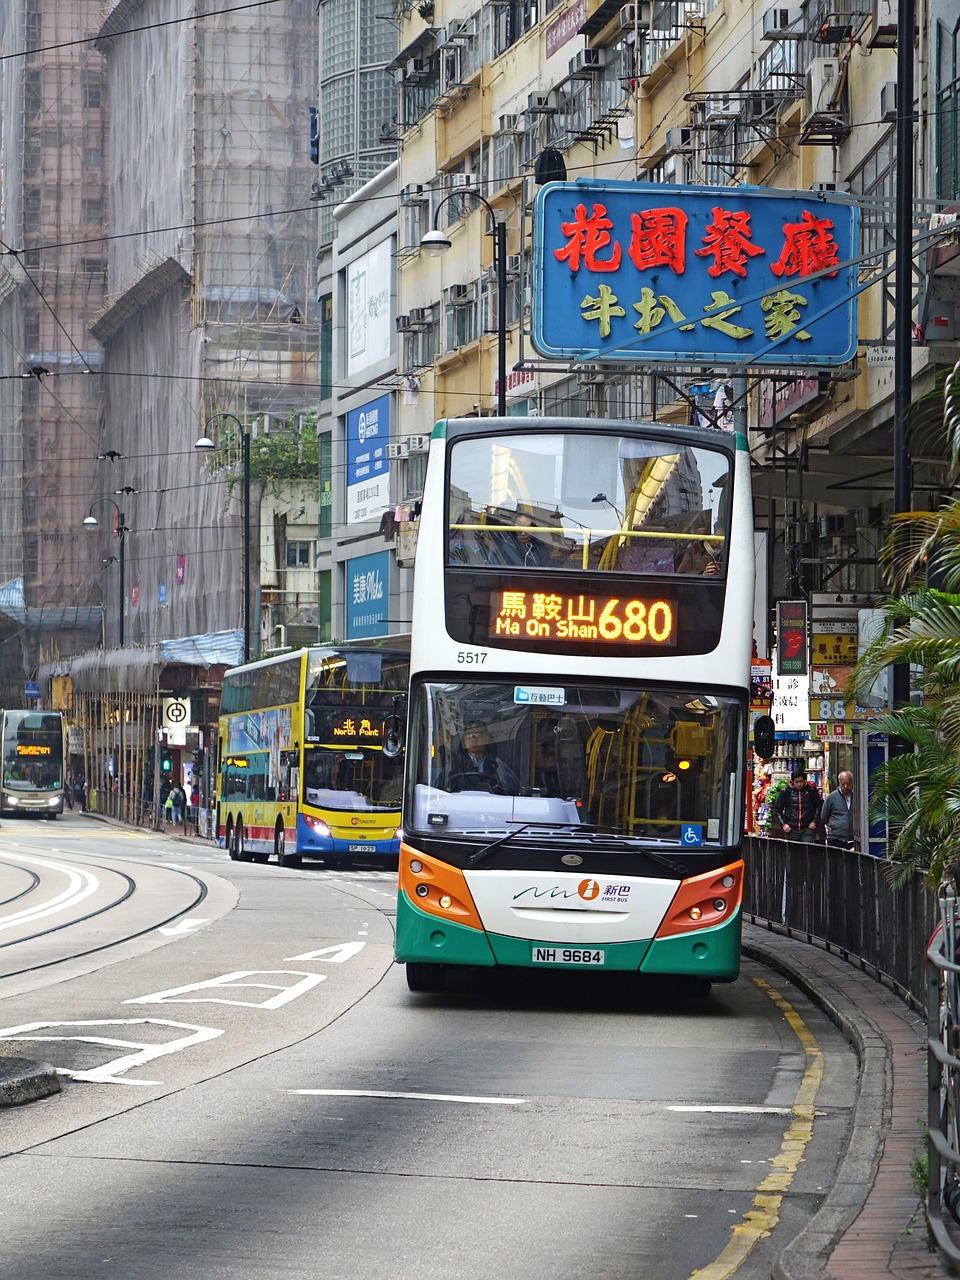 hongkong bus city free photo